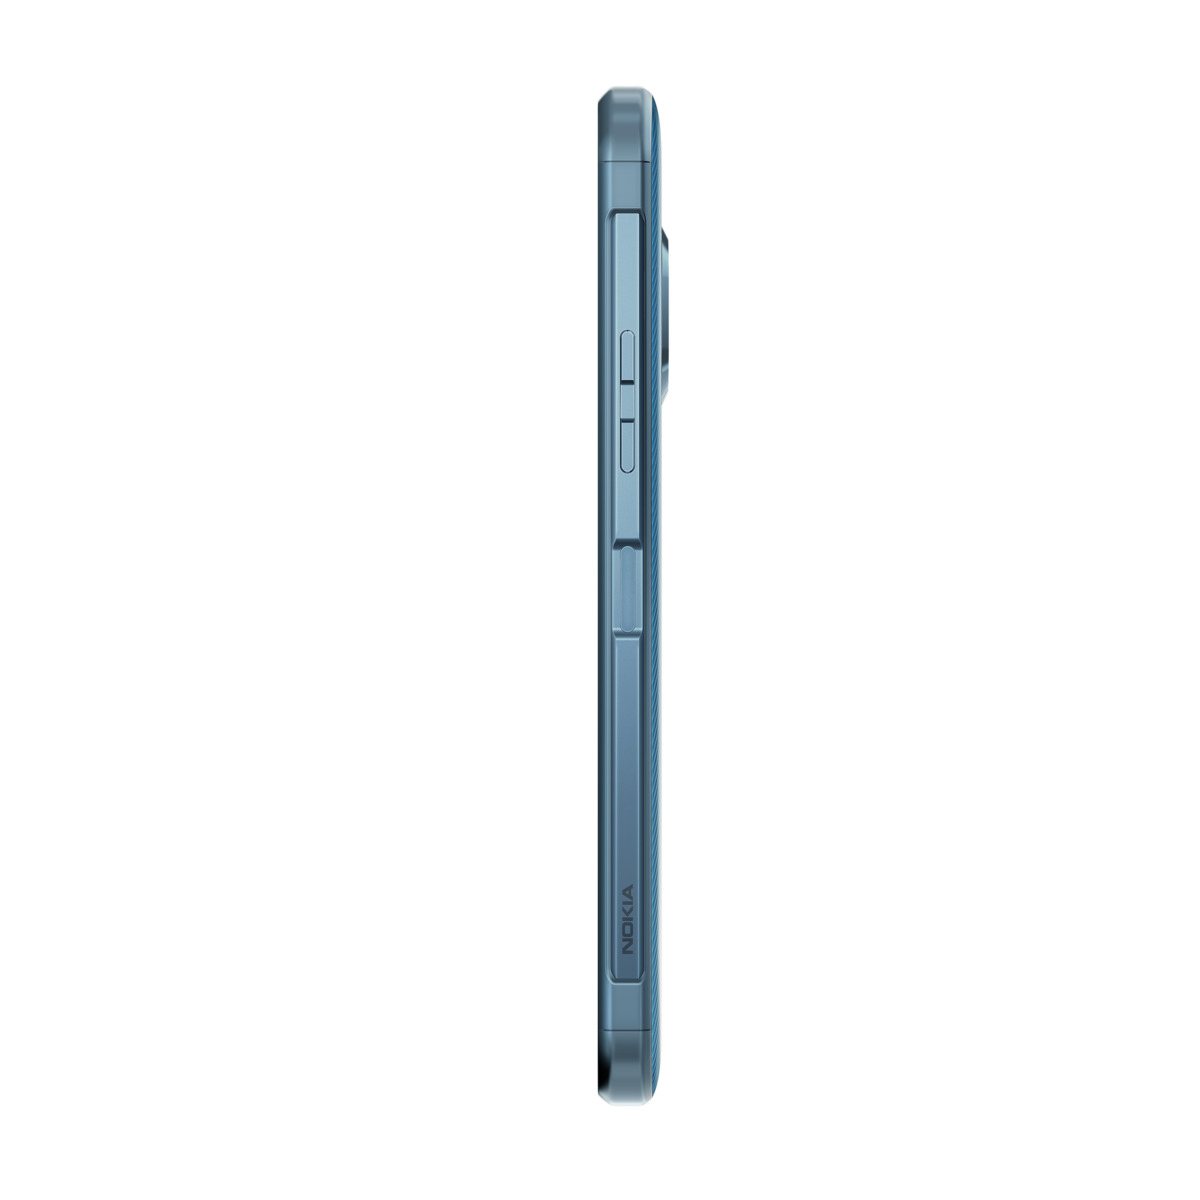 NOKIA XR20 64 GB Dual SIM blau